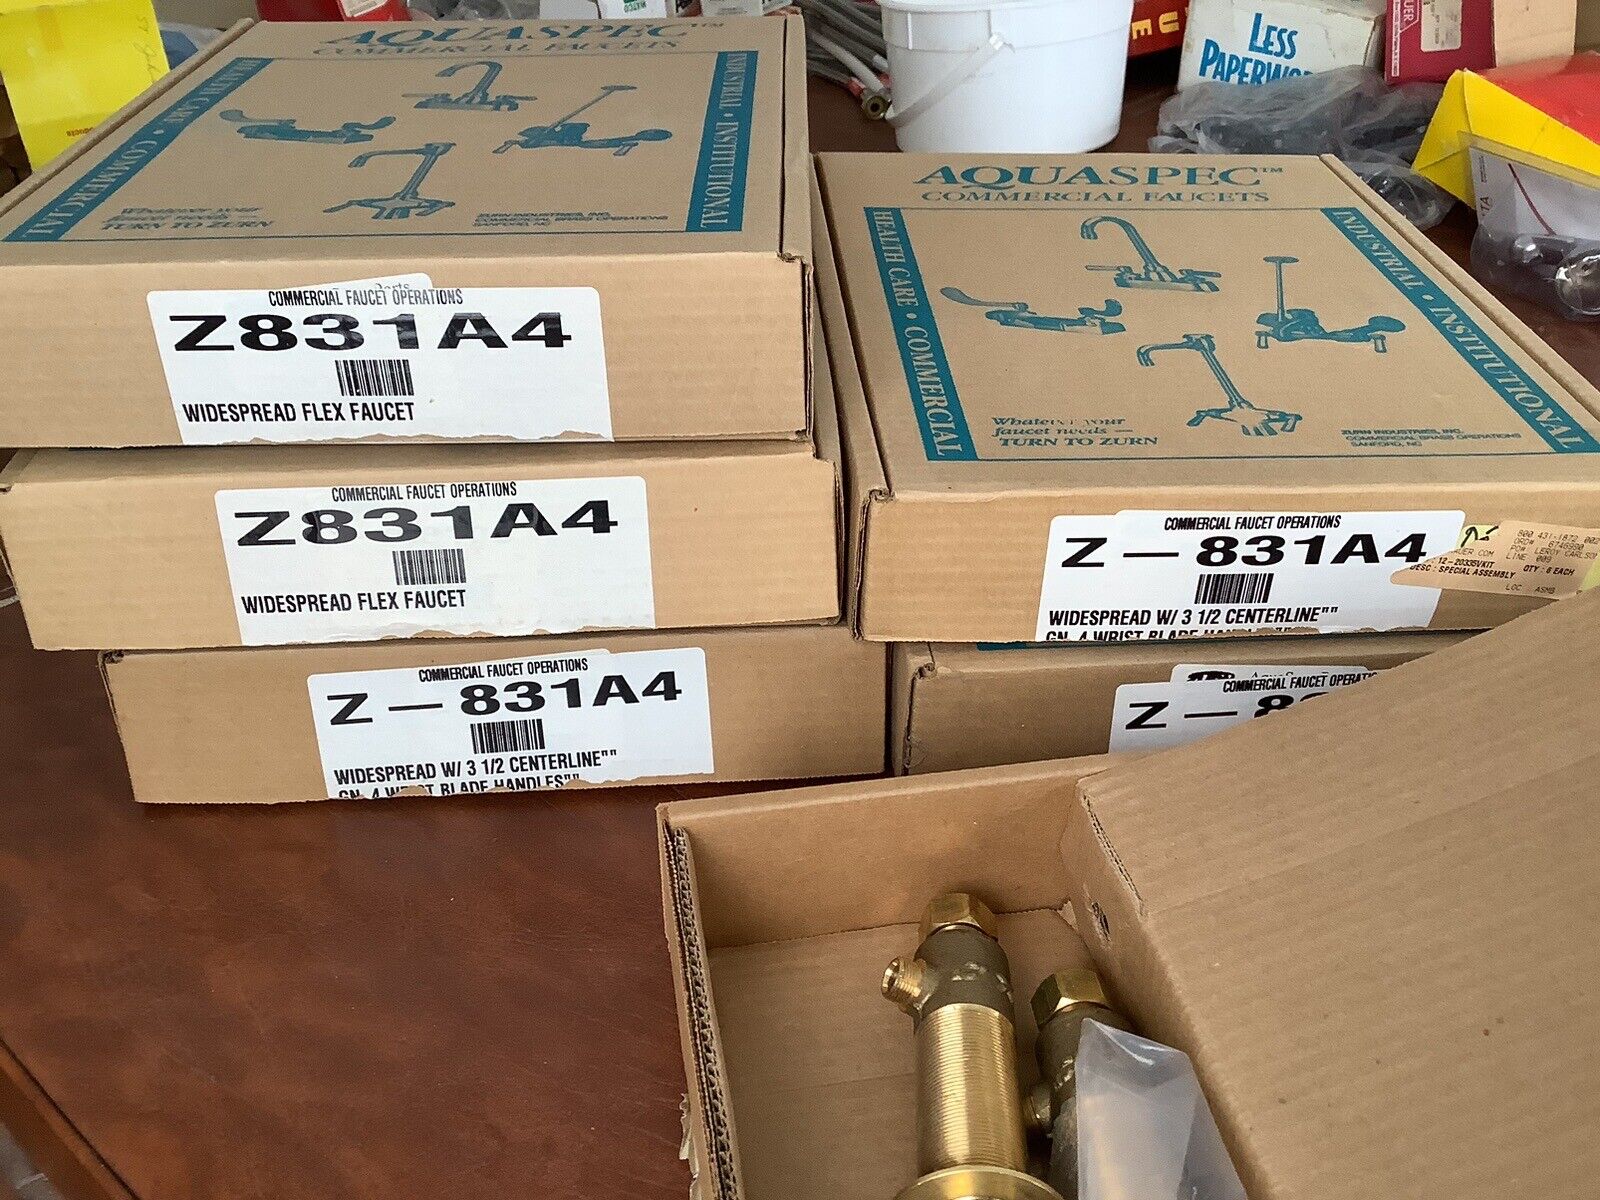 Zurn Z-831A4 Widespread W/3-1/2”centerlinespout And 4” Wrist Blades